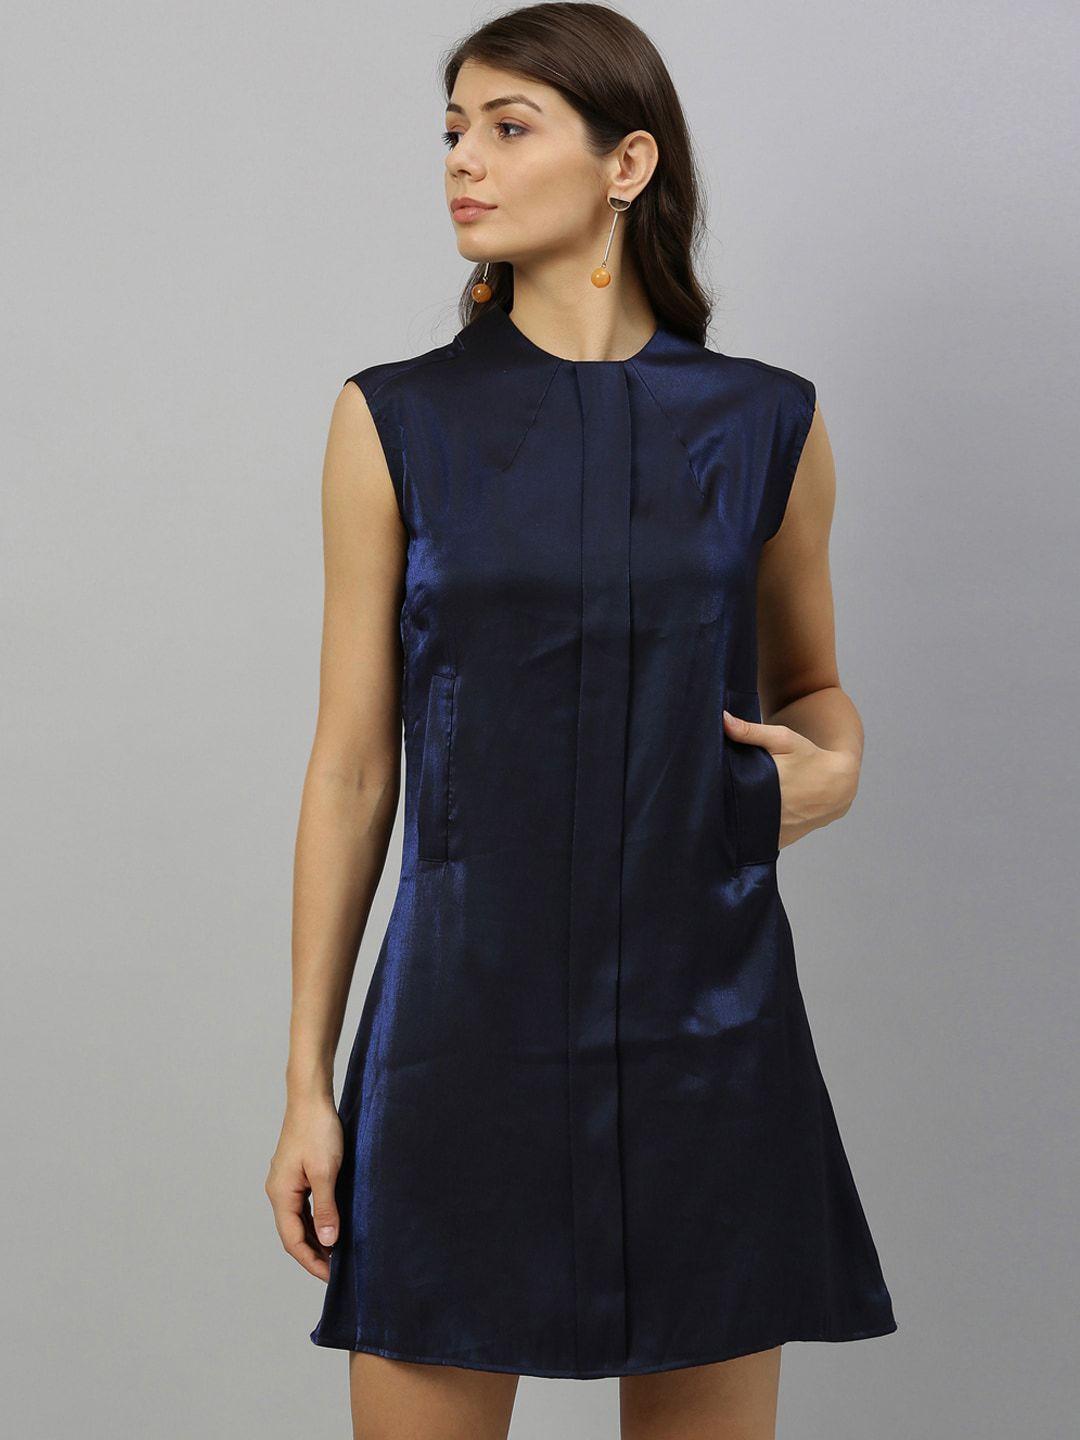 rareism women navy blue solid a-line dress